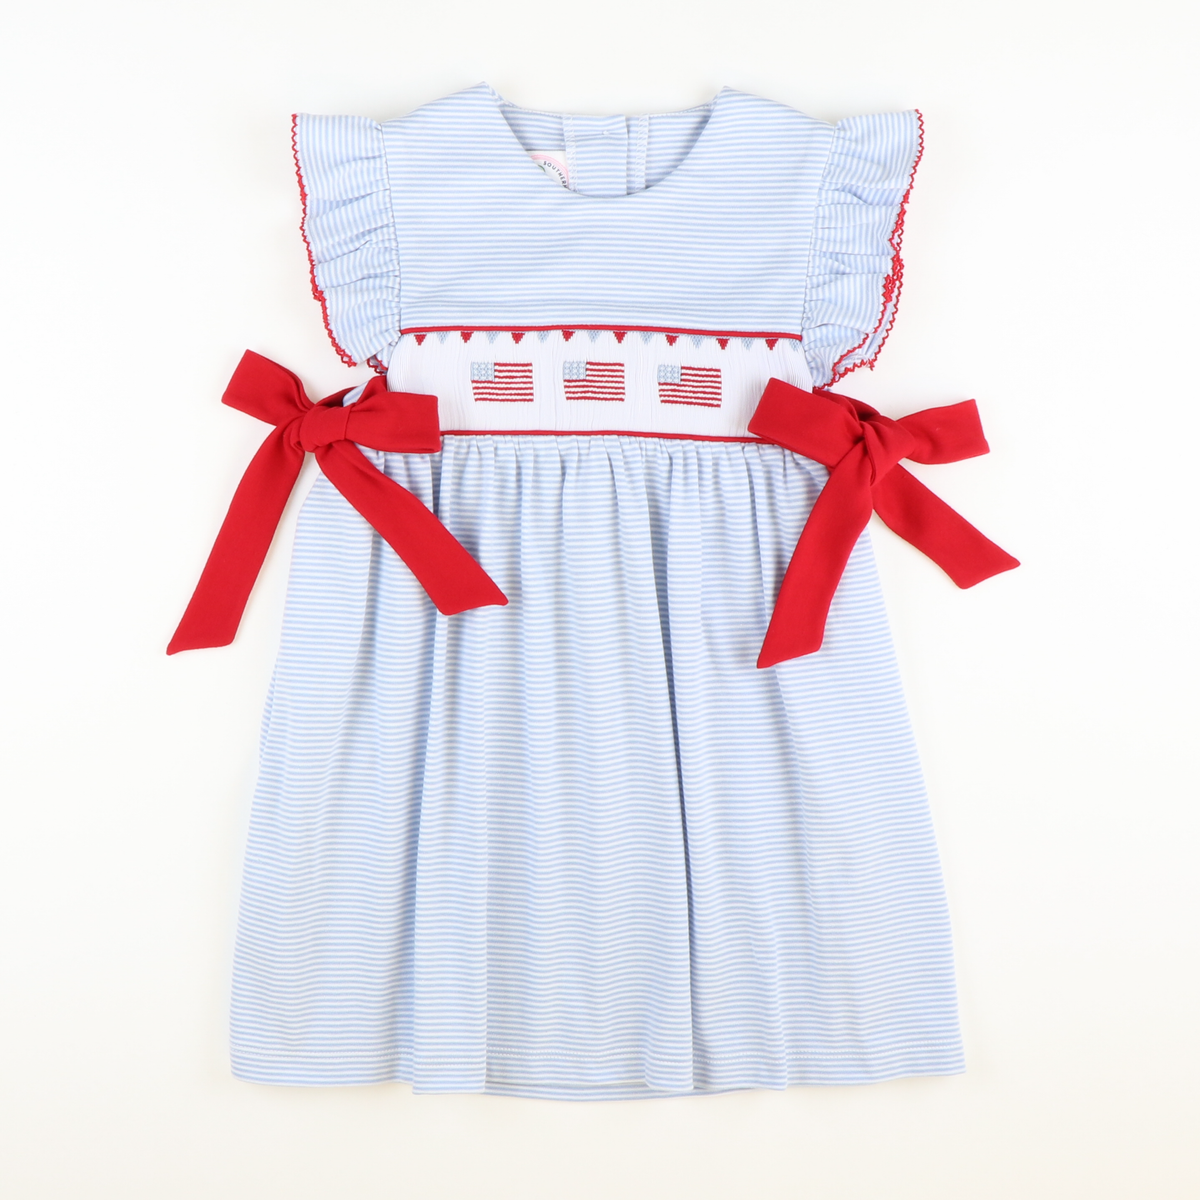 Smocked Fourth of July Parade Dress - Light Blue Stripe Knit